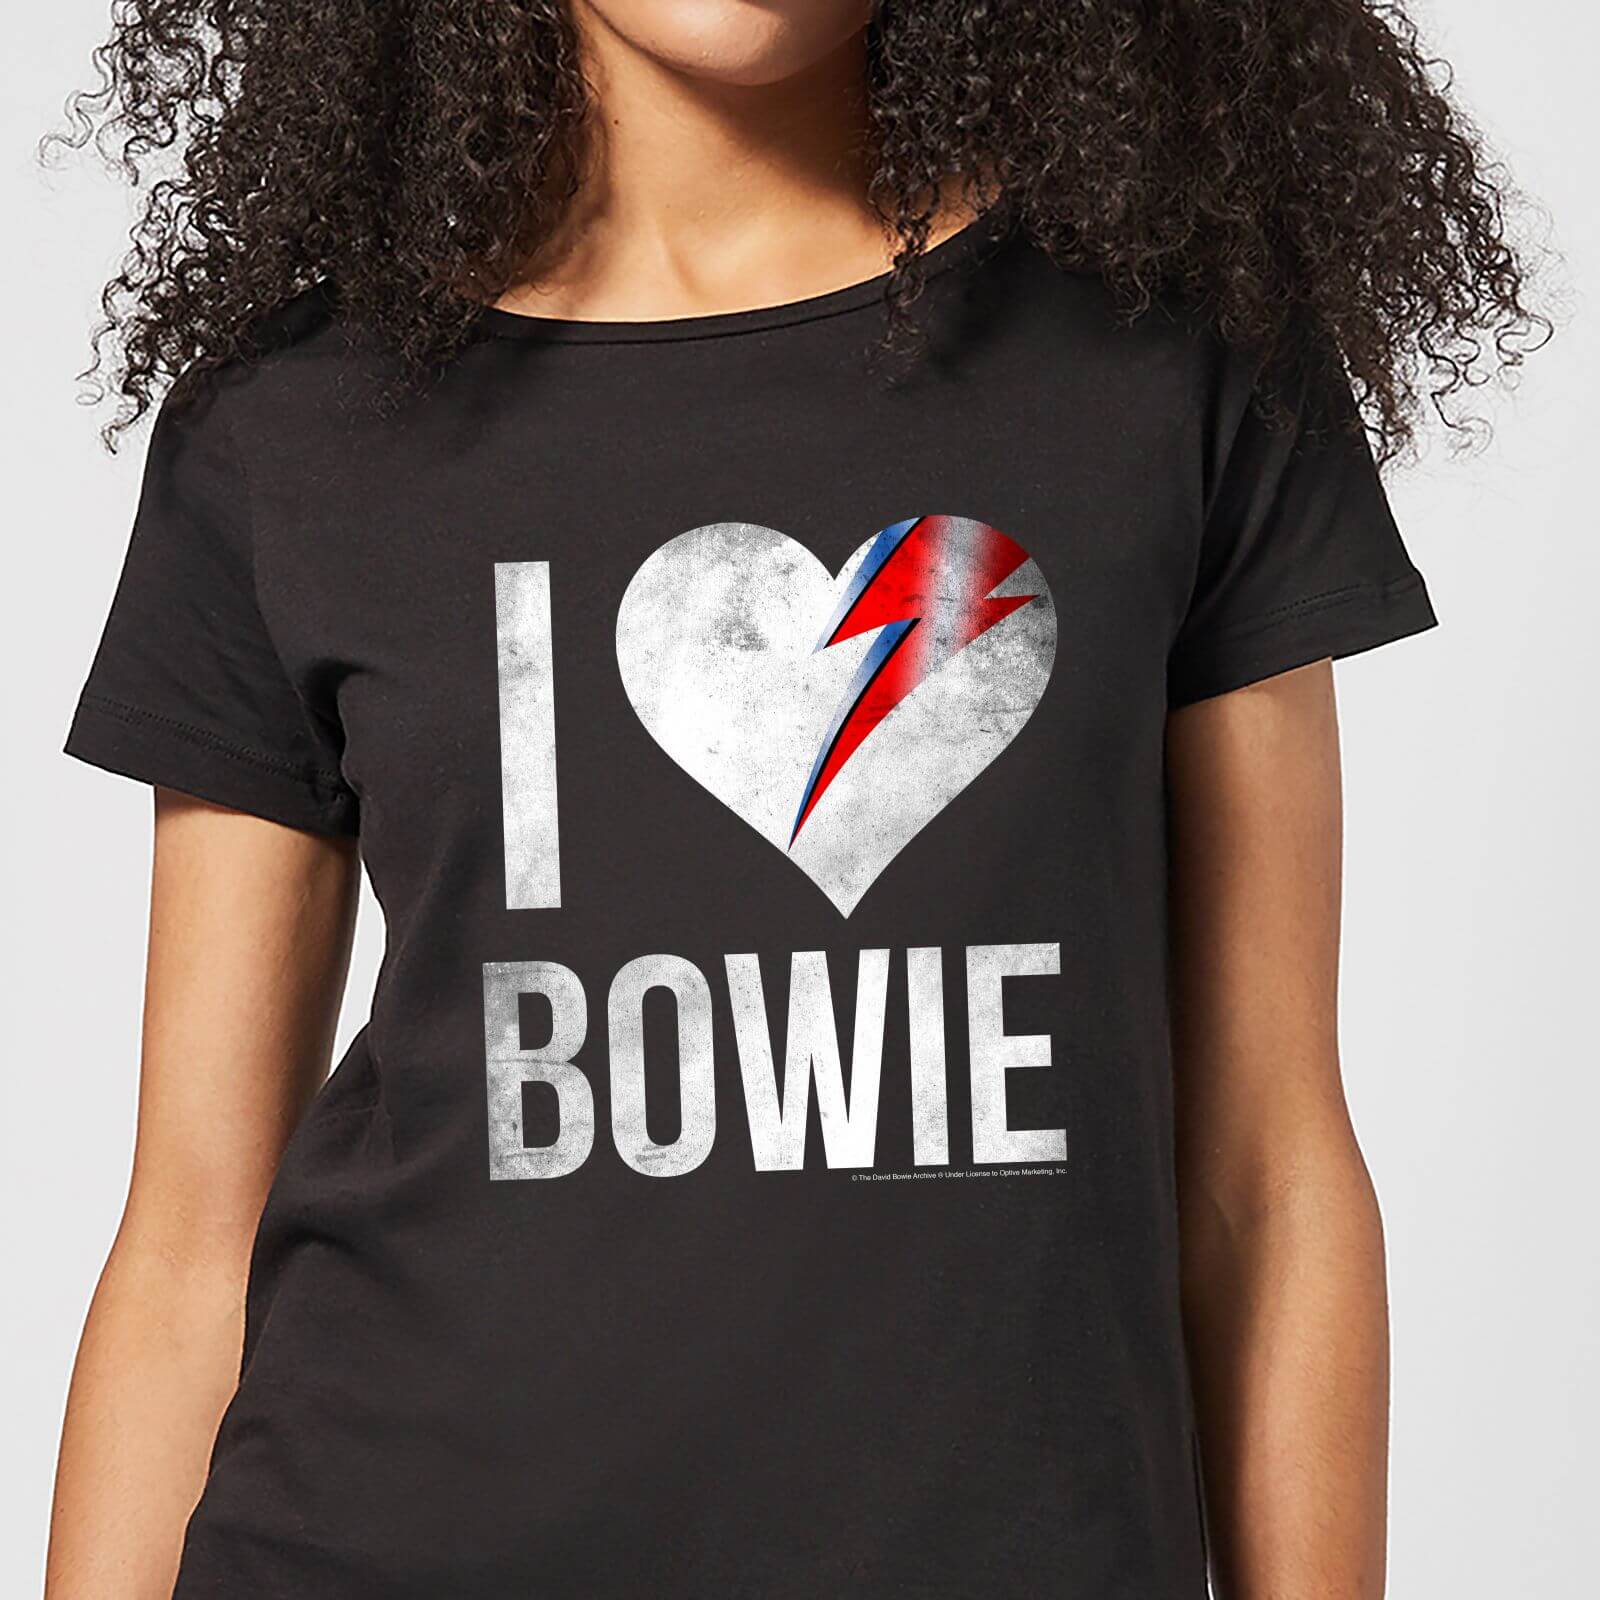 David Bowie I Love Bowie Women's T-Shirt - Black - M - Black